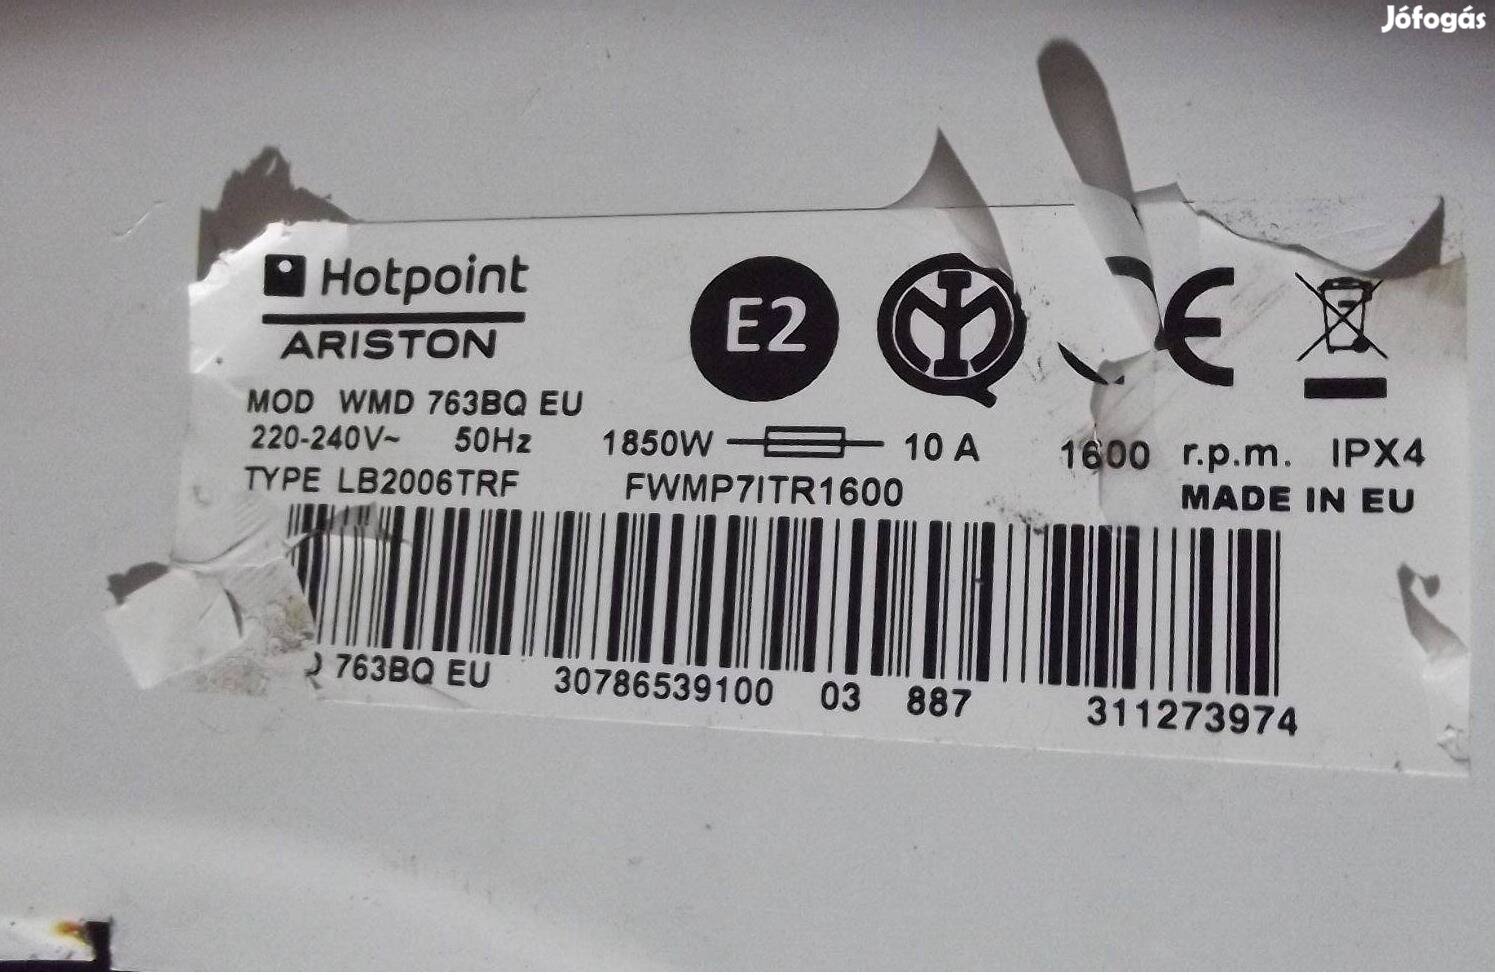 Hotpoint Ariston WMD 763BQ EU mosógép alkatrészei eladók